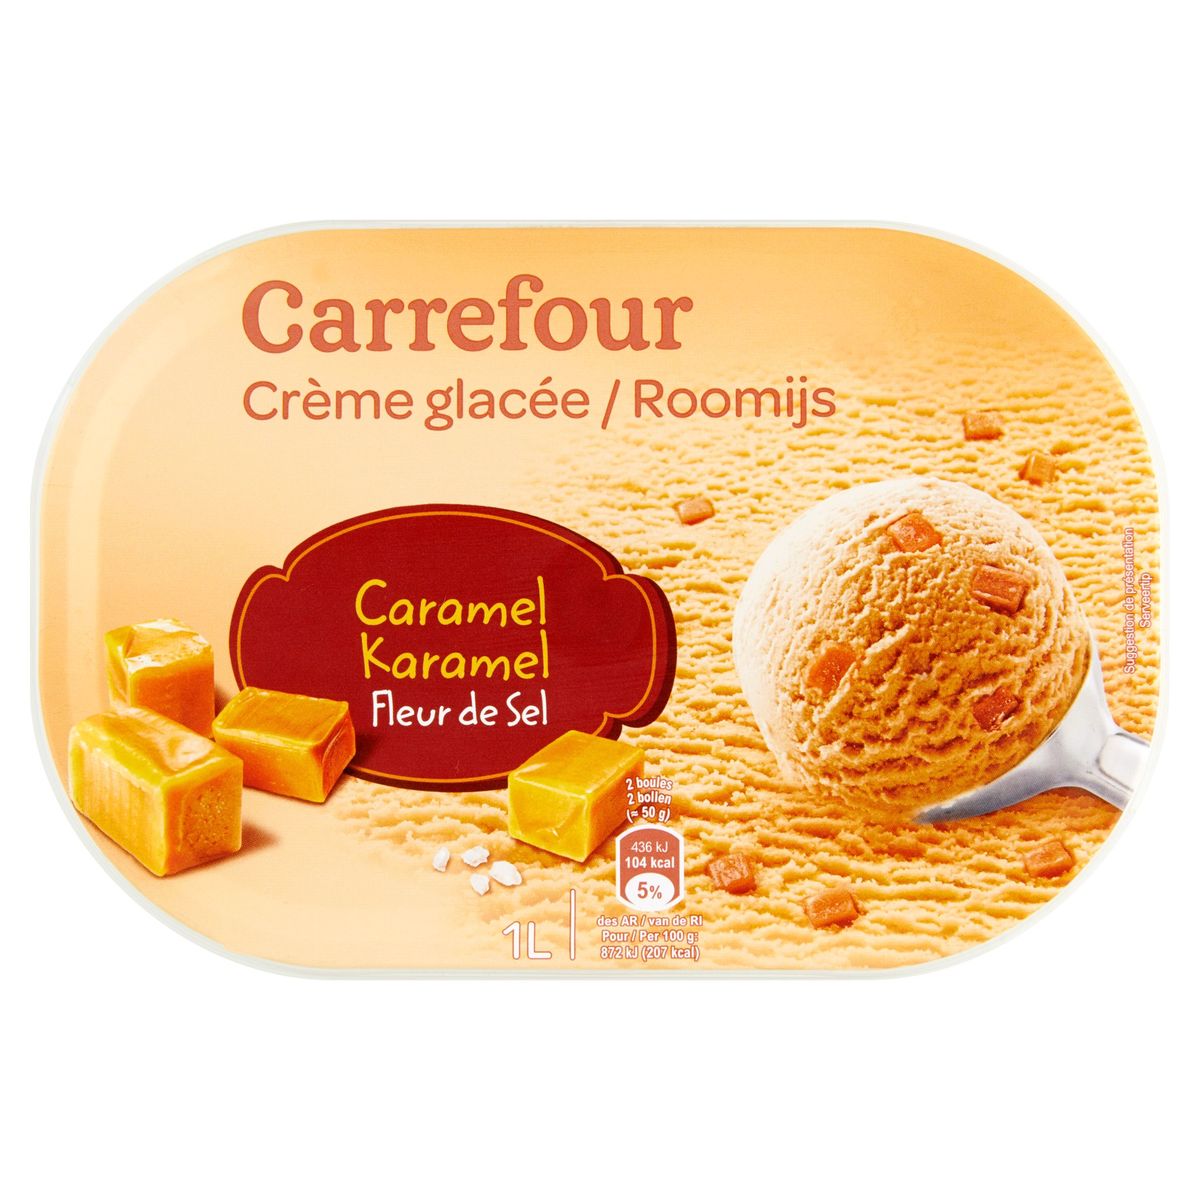 Carrefour Crème Glacée Caramel Fleur de Sel 1 L